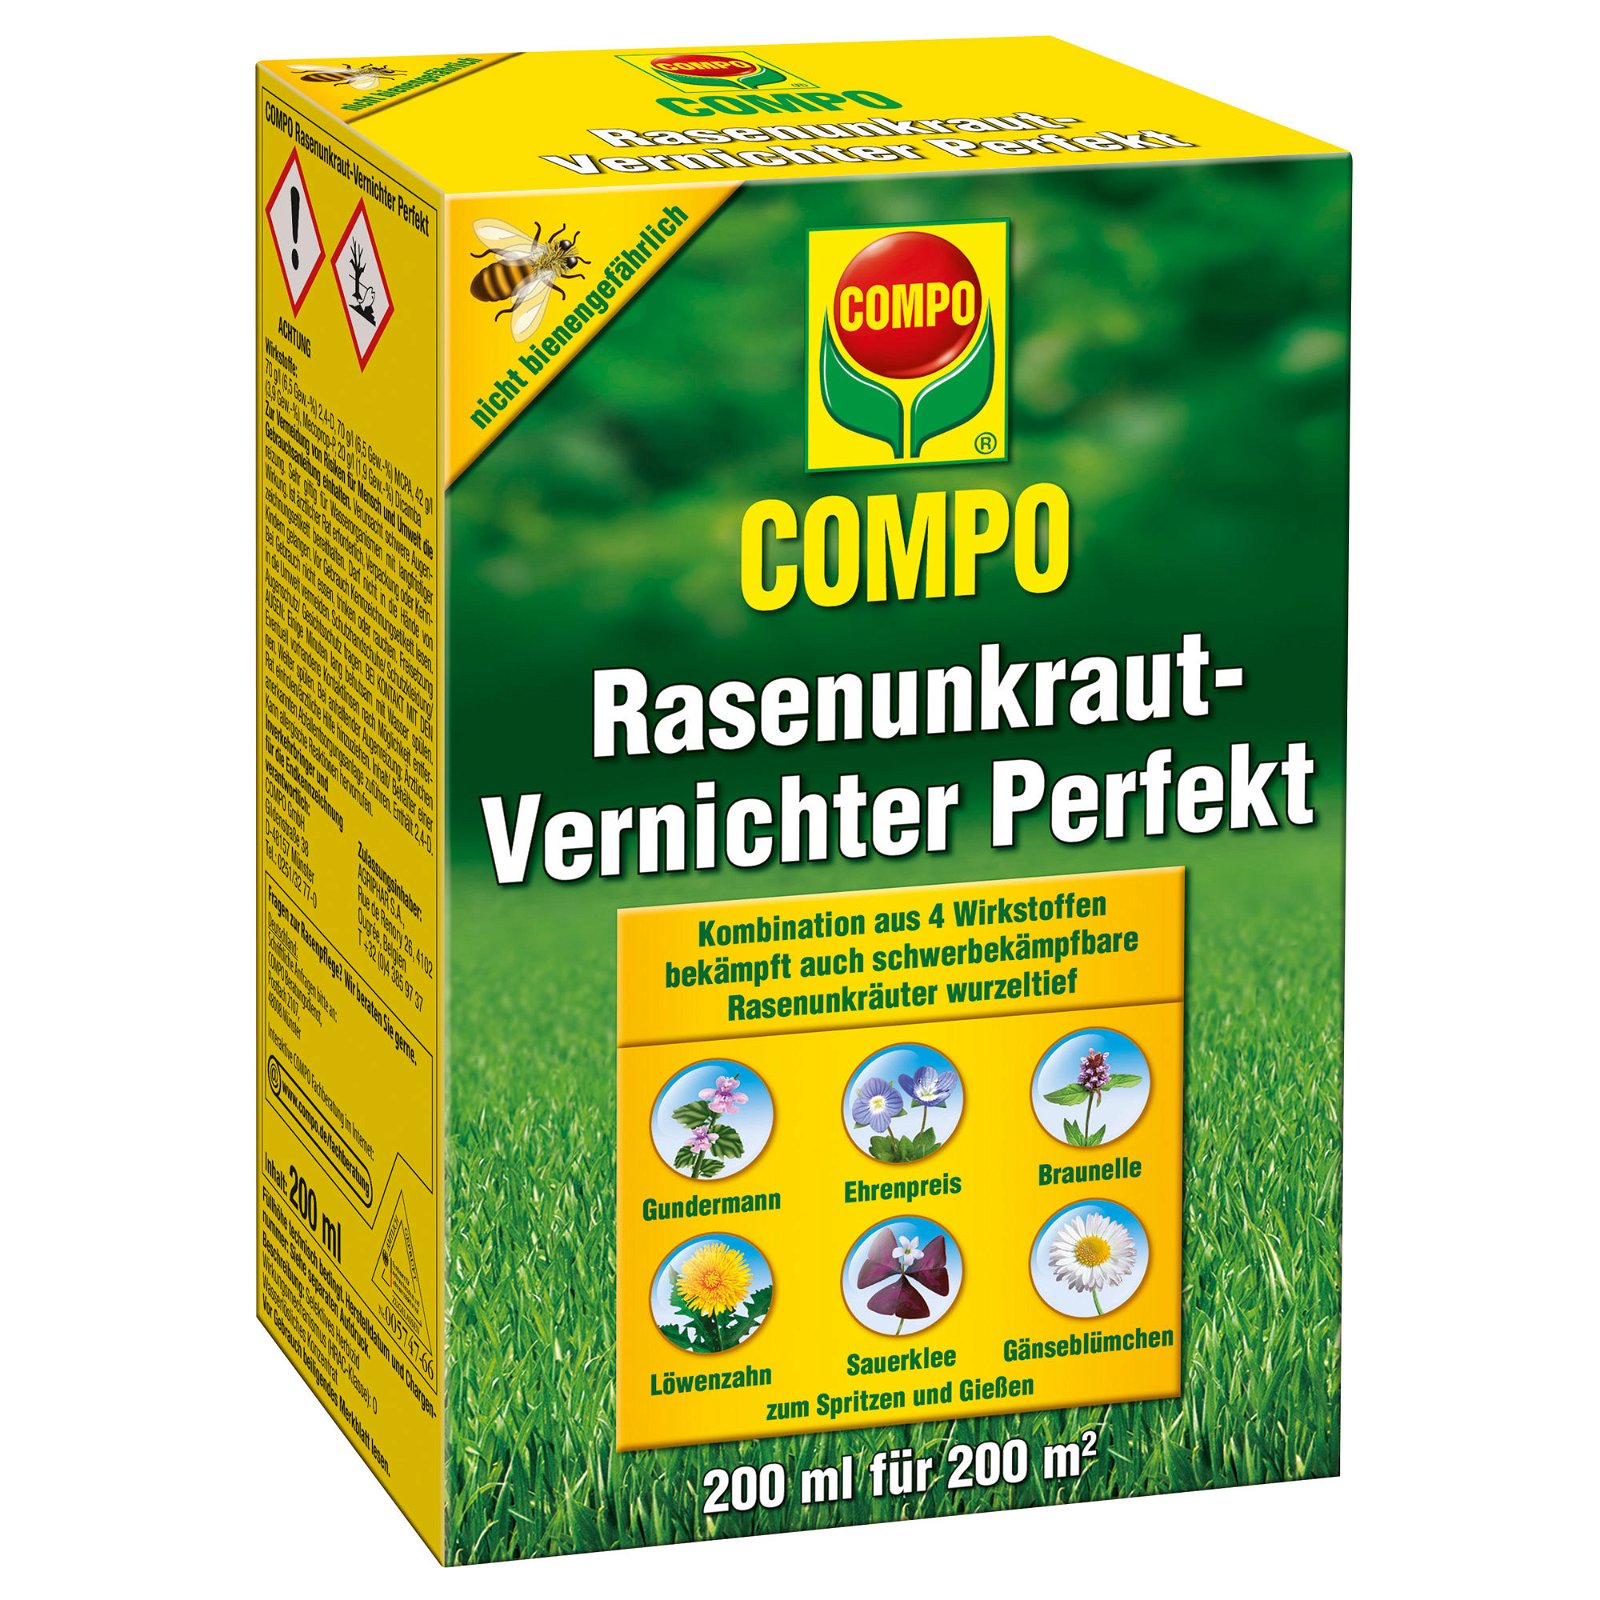 Compo Rasenunkraut-Vernichter Perfekt, 200 ml